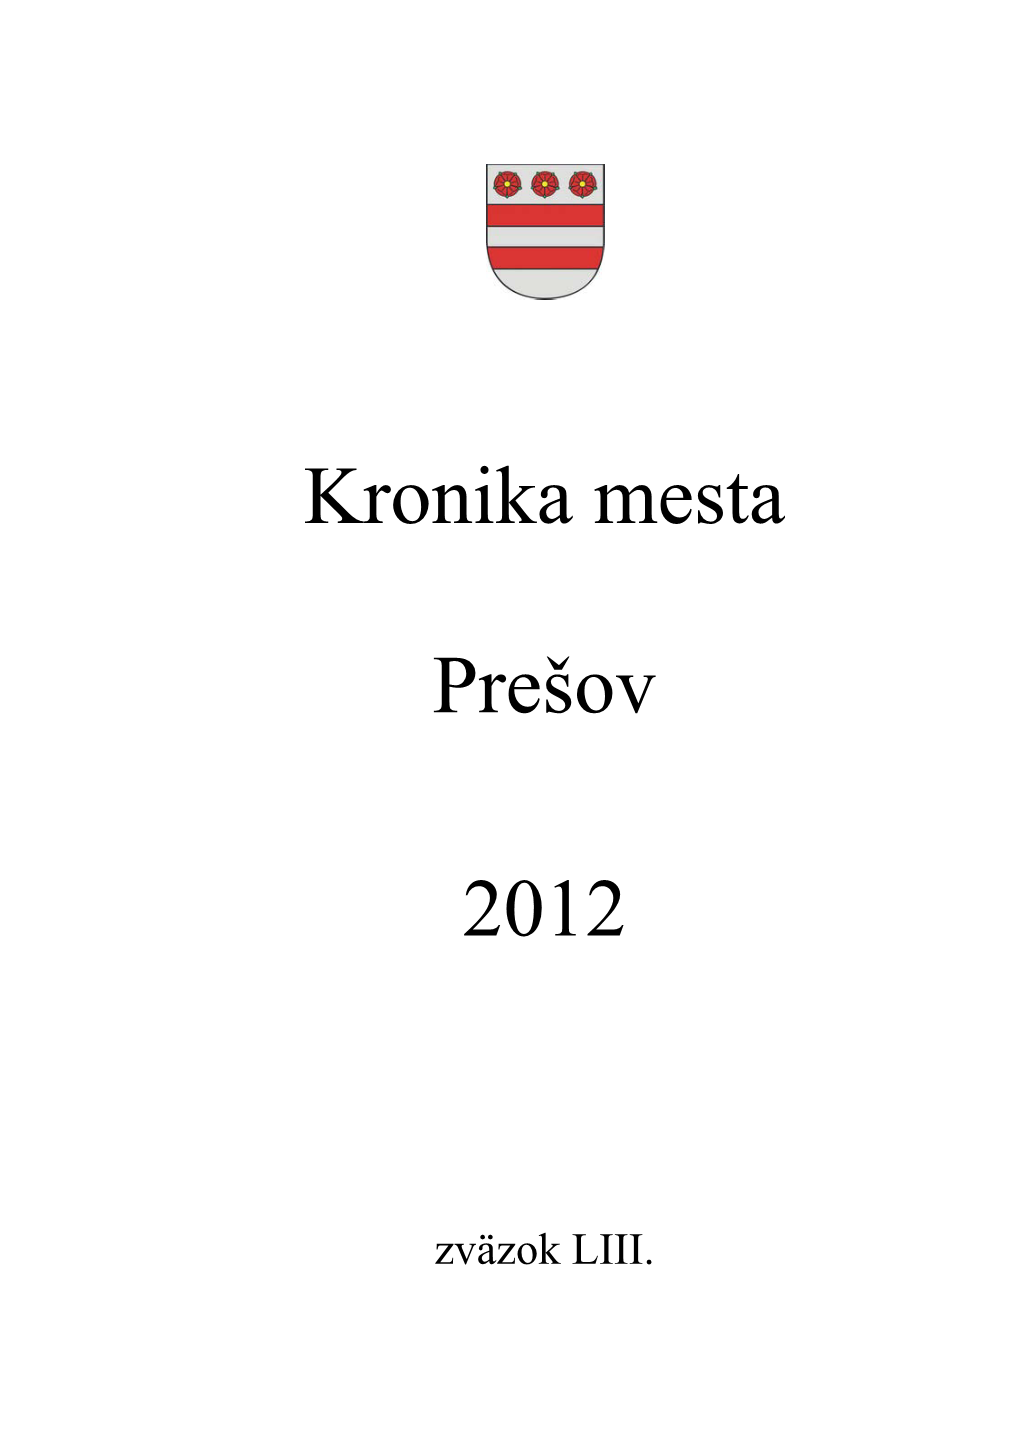 Kronika Mesta Prešov 2012